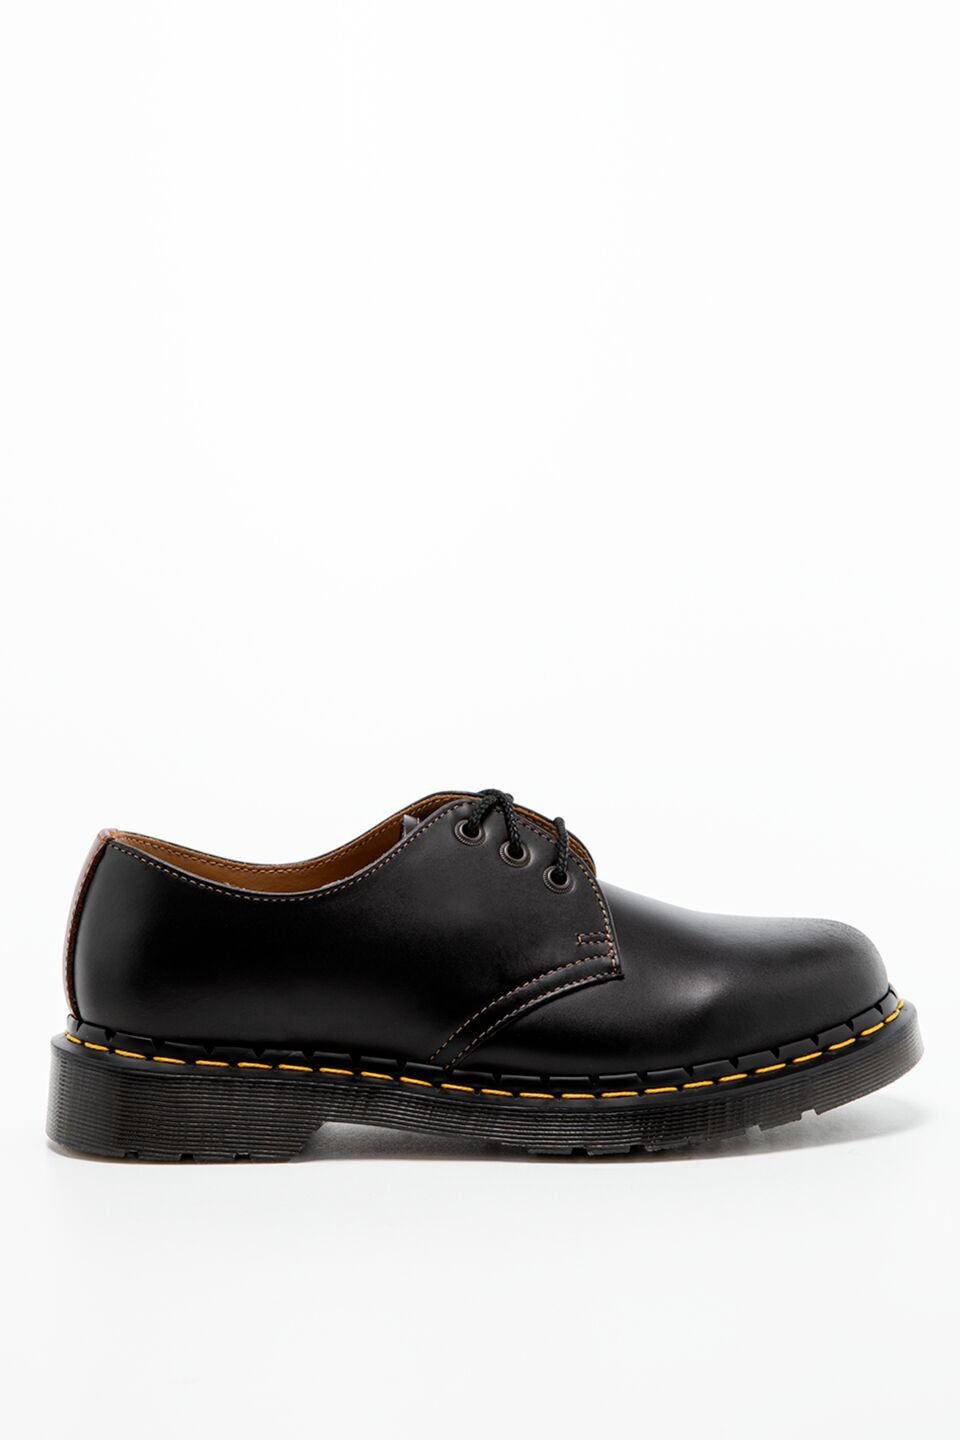 נעלי אלגנט דר מרטינס  לגברים DR Martens EYE - שחור/חום